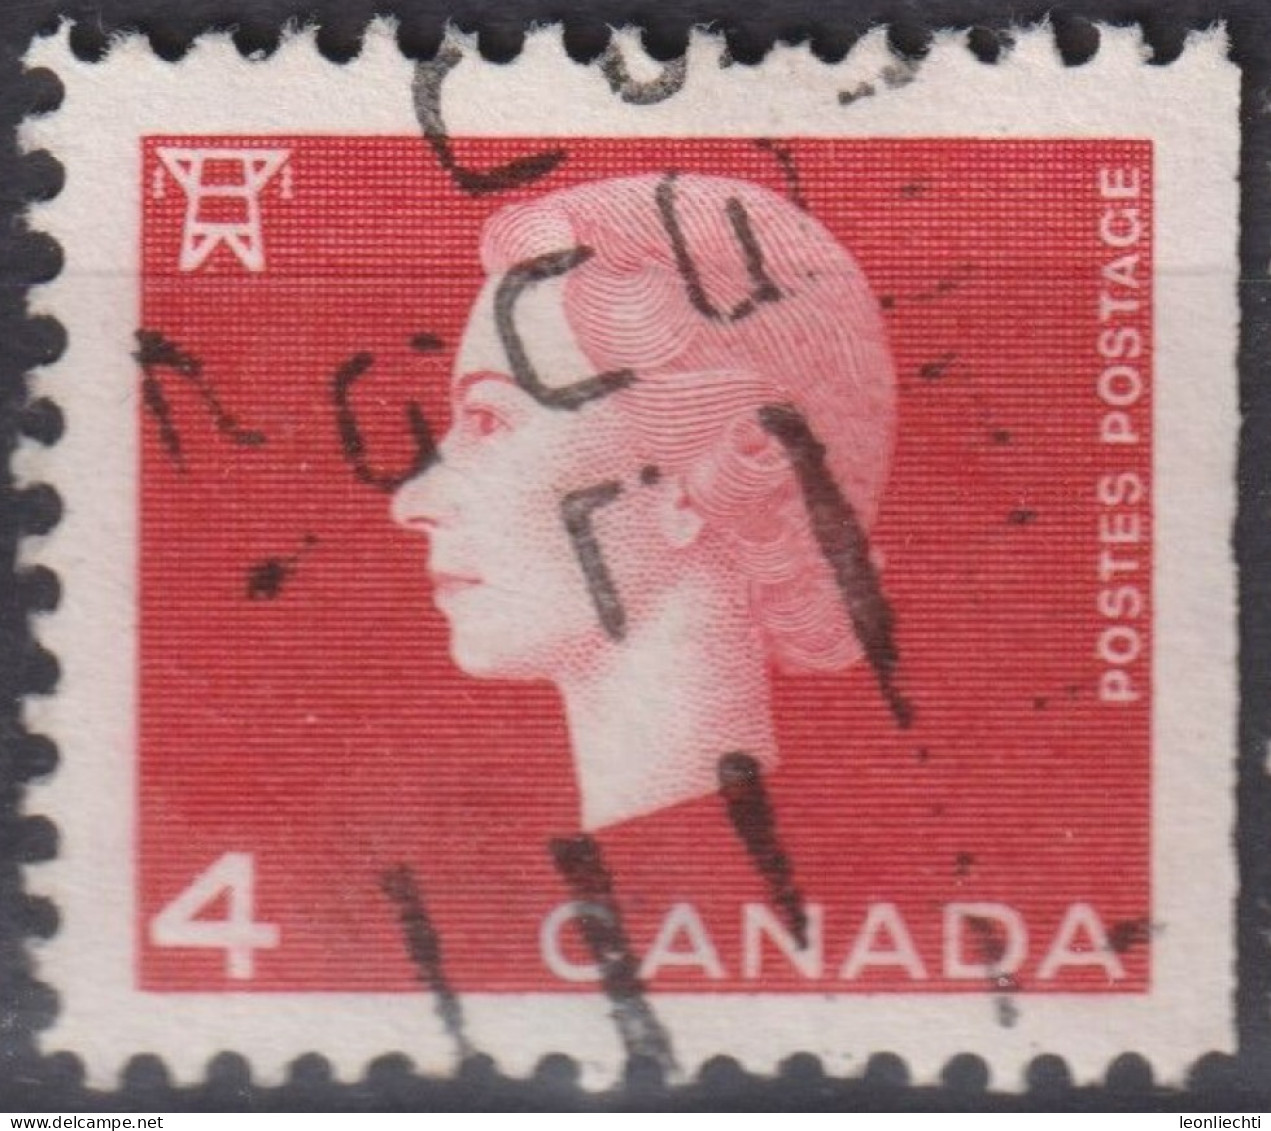 1963 Kanada ° Mi:CA 351Exr, Sn:CA 404asR, Yt:CA 331ndd, Queen Elizabeth II - 1962-63 - Cameo Issue - Gebruikt